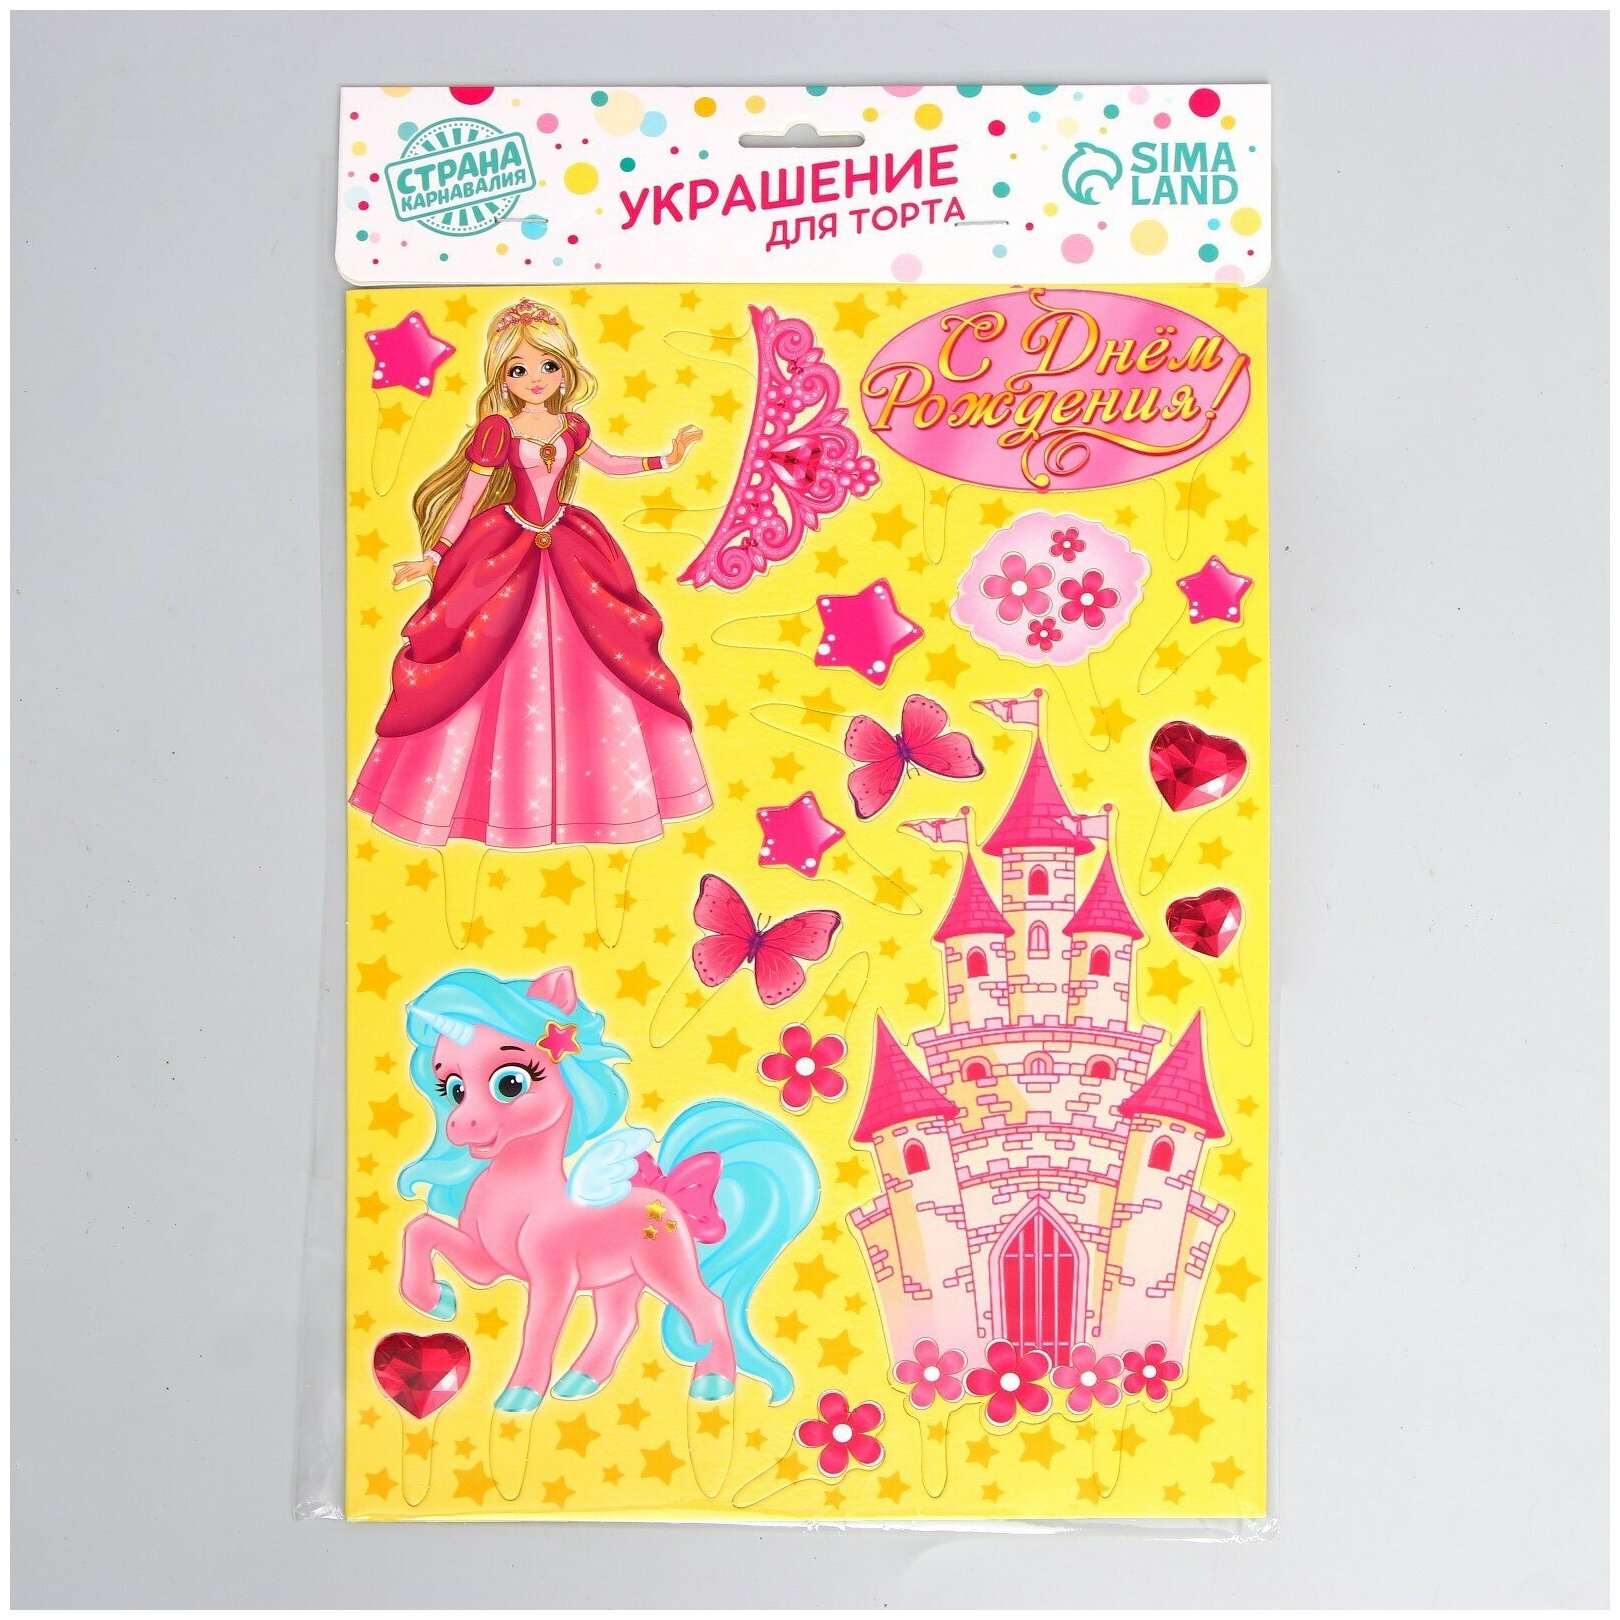 Набор для украшения торта "С днем рождения", 17 штук, картон, формат: А4, принцесса, для девочек, цвет розовый